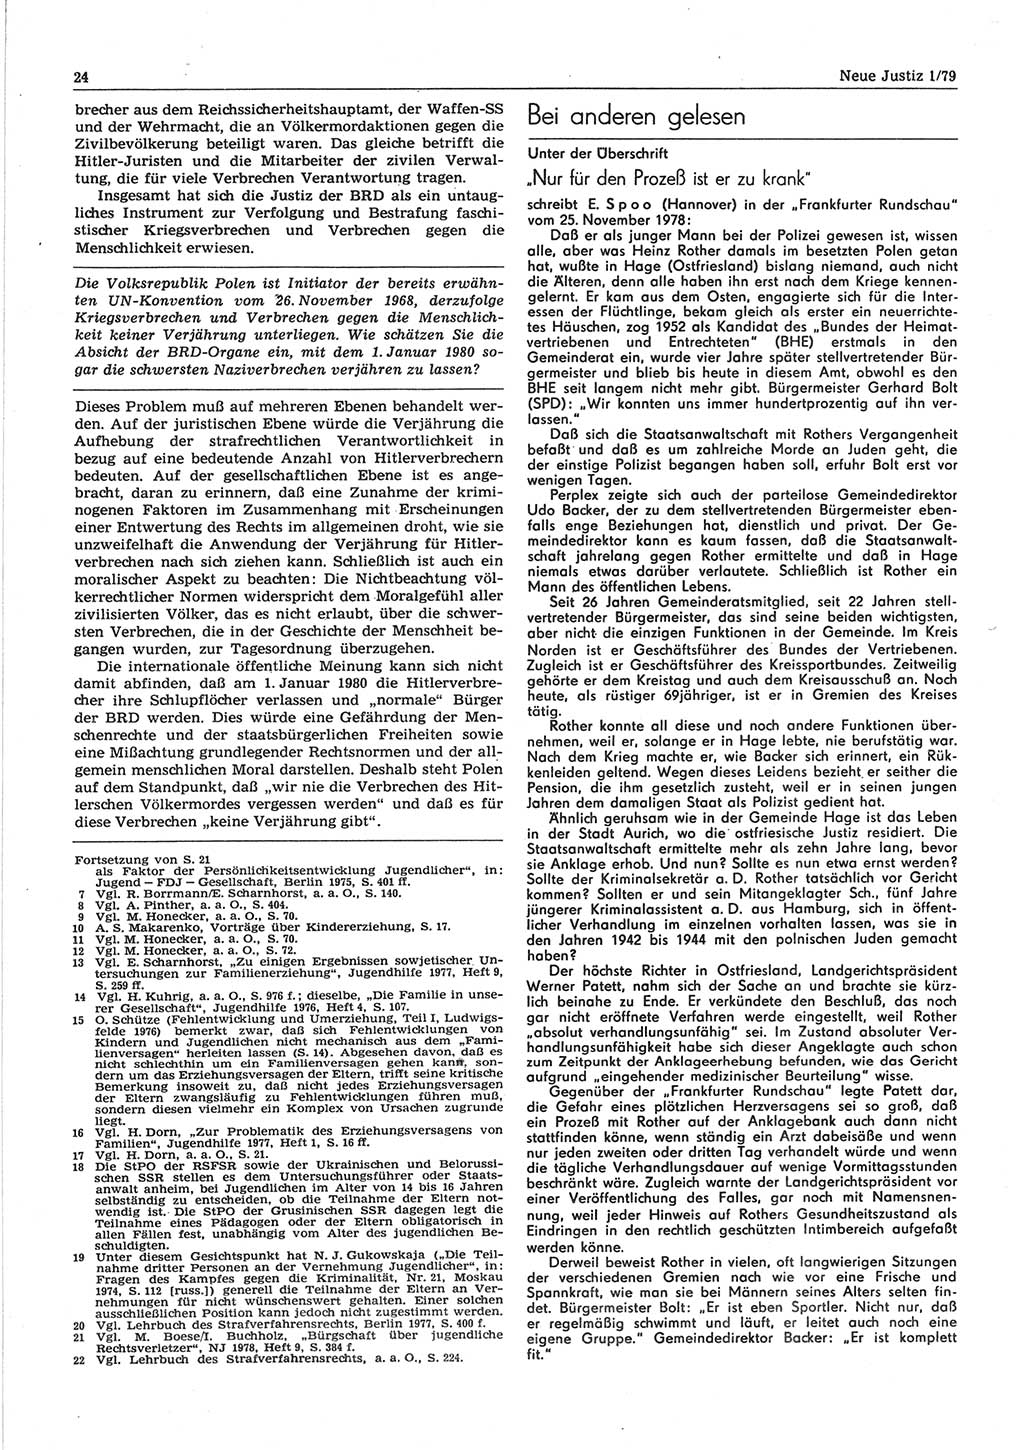 Neue Justiz (NJ), Zeitschrift für sozialistisches Recht und Gesetzlichkeit [Deutsche Demokratische Republik (DDR)], 33. Jahrgang 1979, Seite 24 (NJ DDR 1979, S. 24)